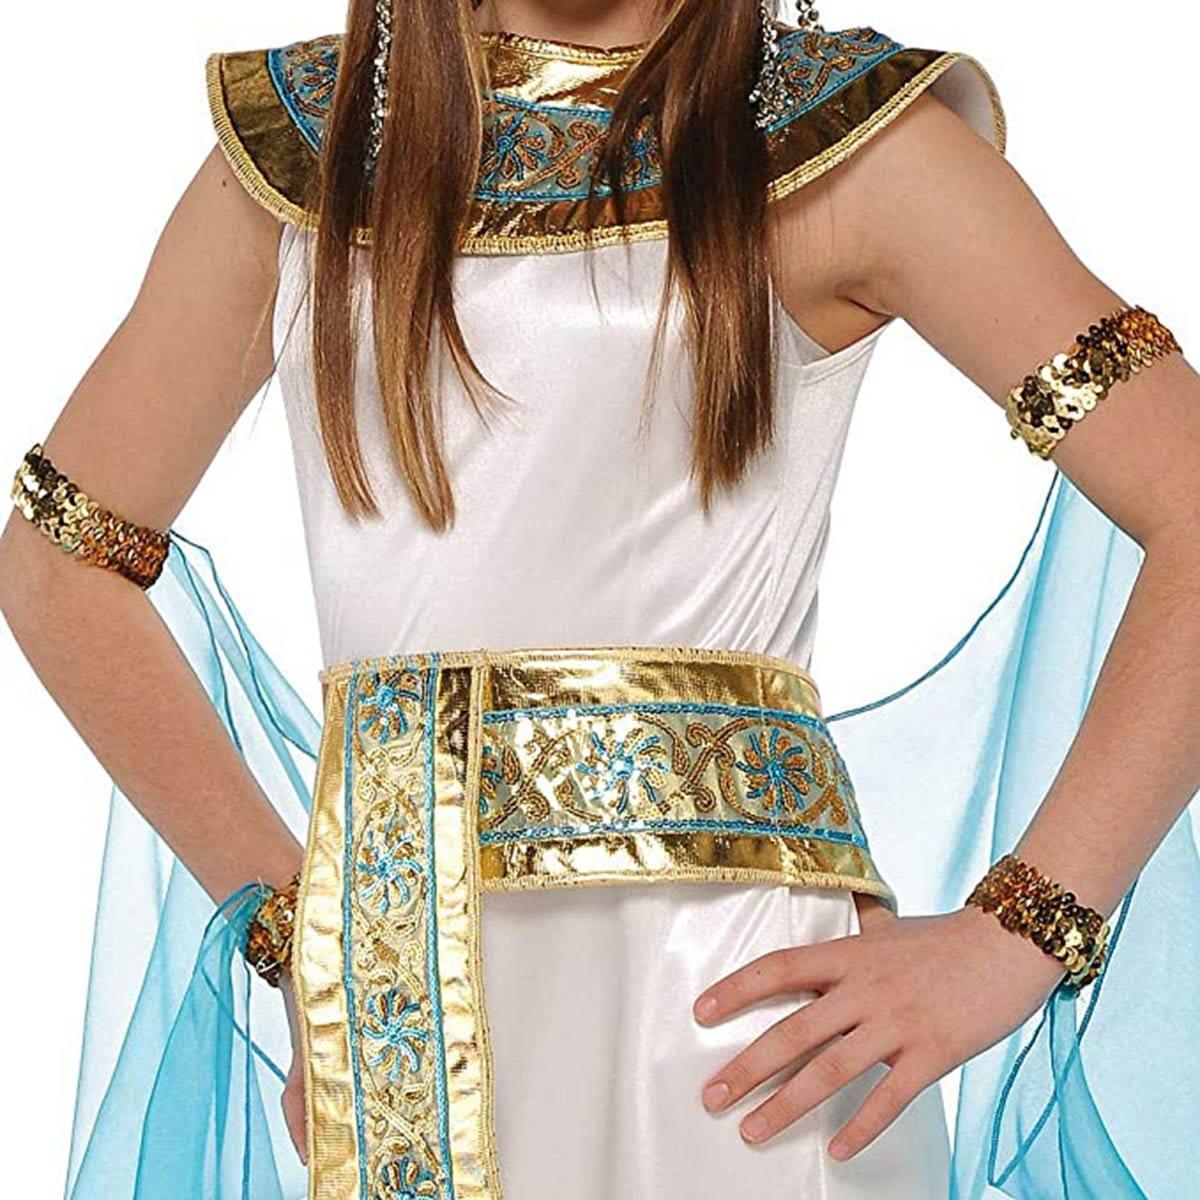 Disciplin Vær modløs Øl Cleopatra Costume for Girls | Party Expert